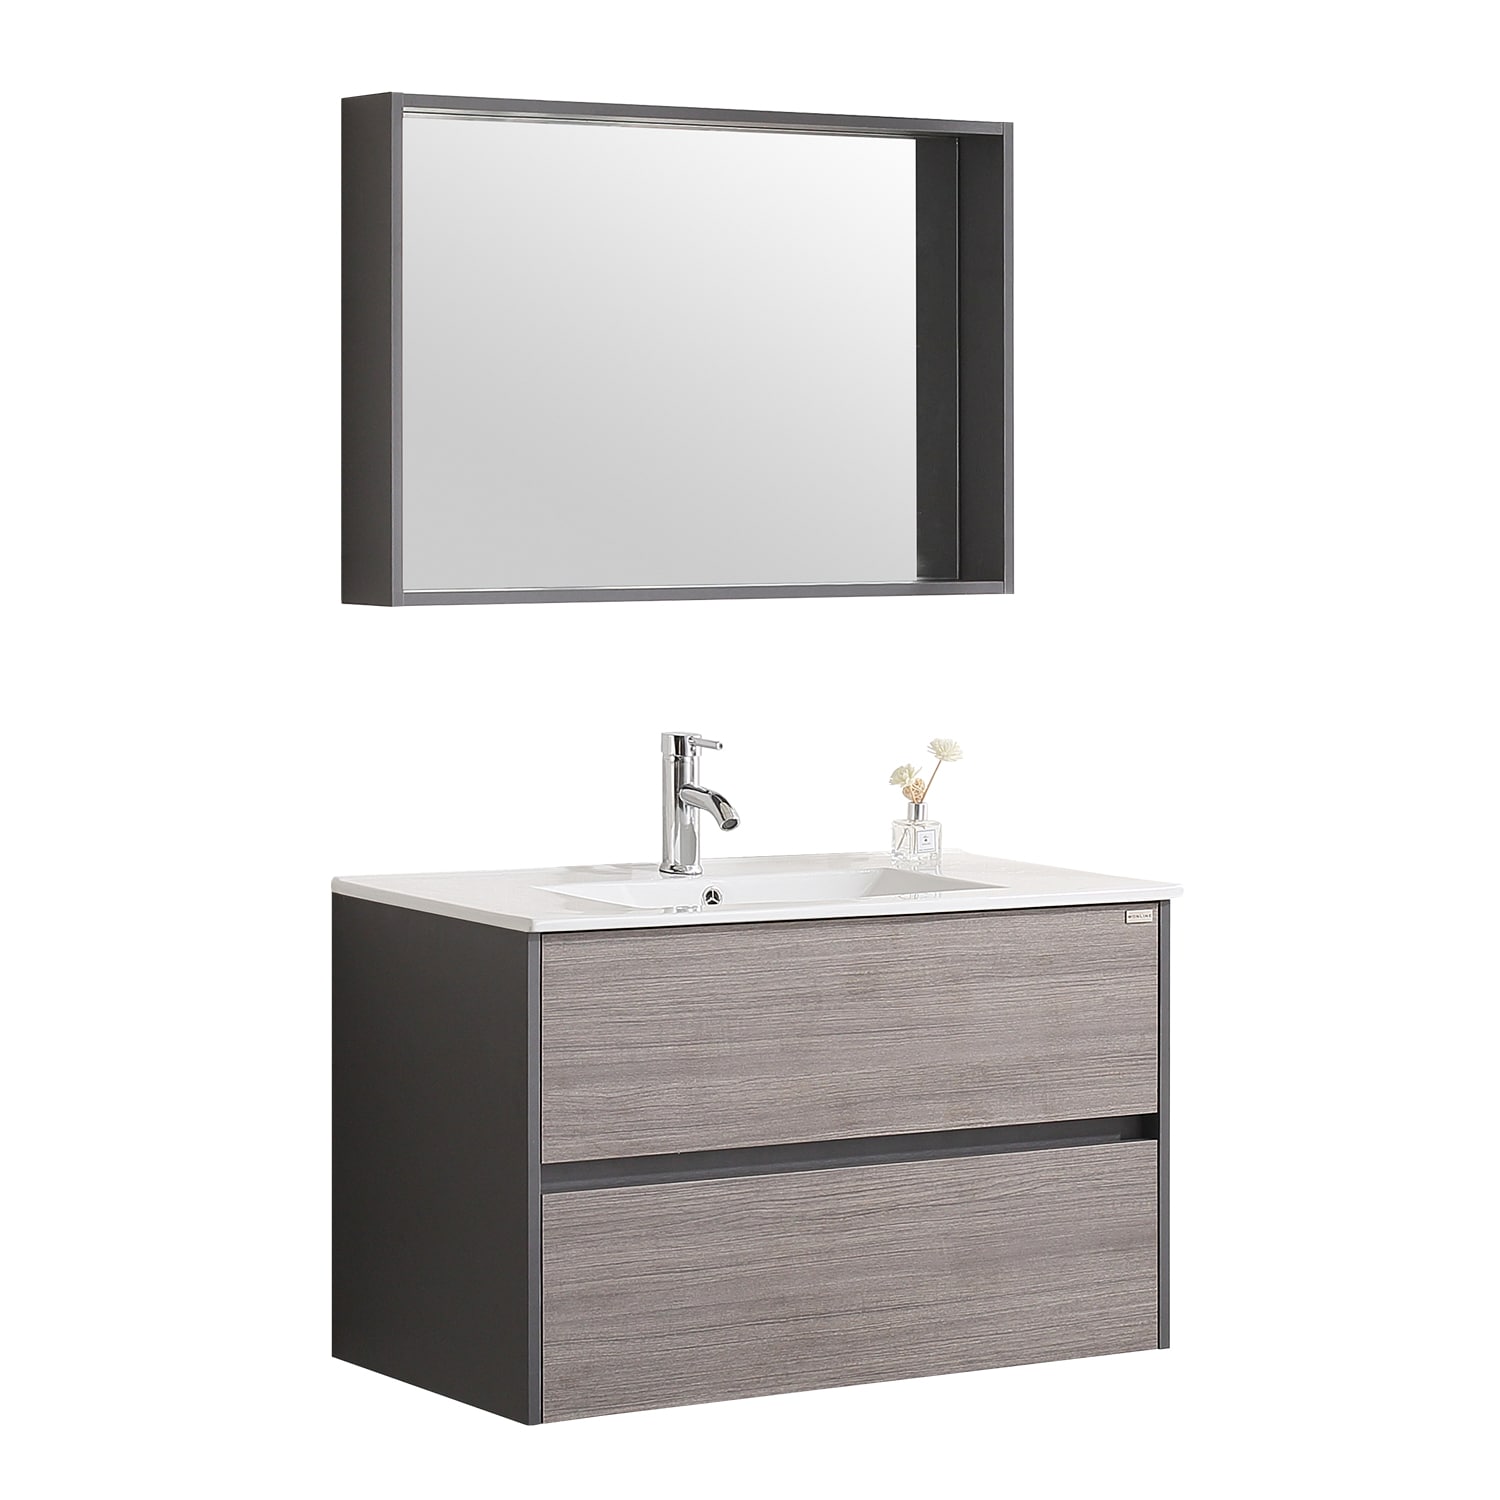 Walcut Single Sink Bathroom Vanity, White Bathroom Vanity Set With Mirror